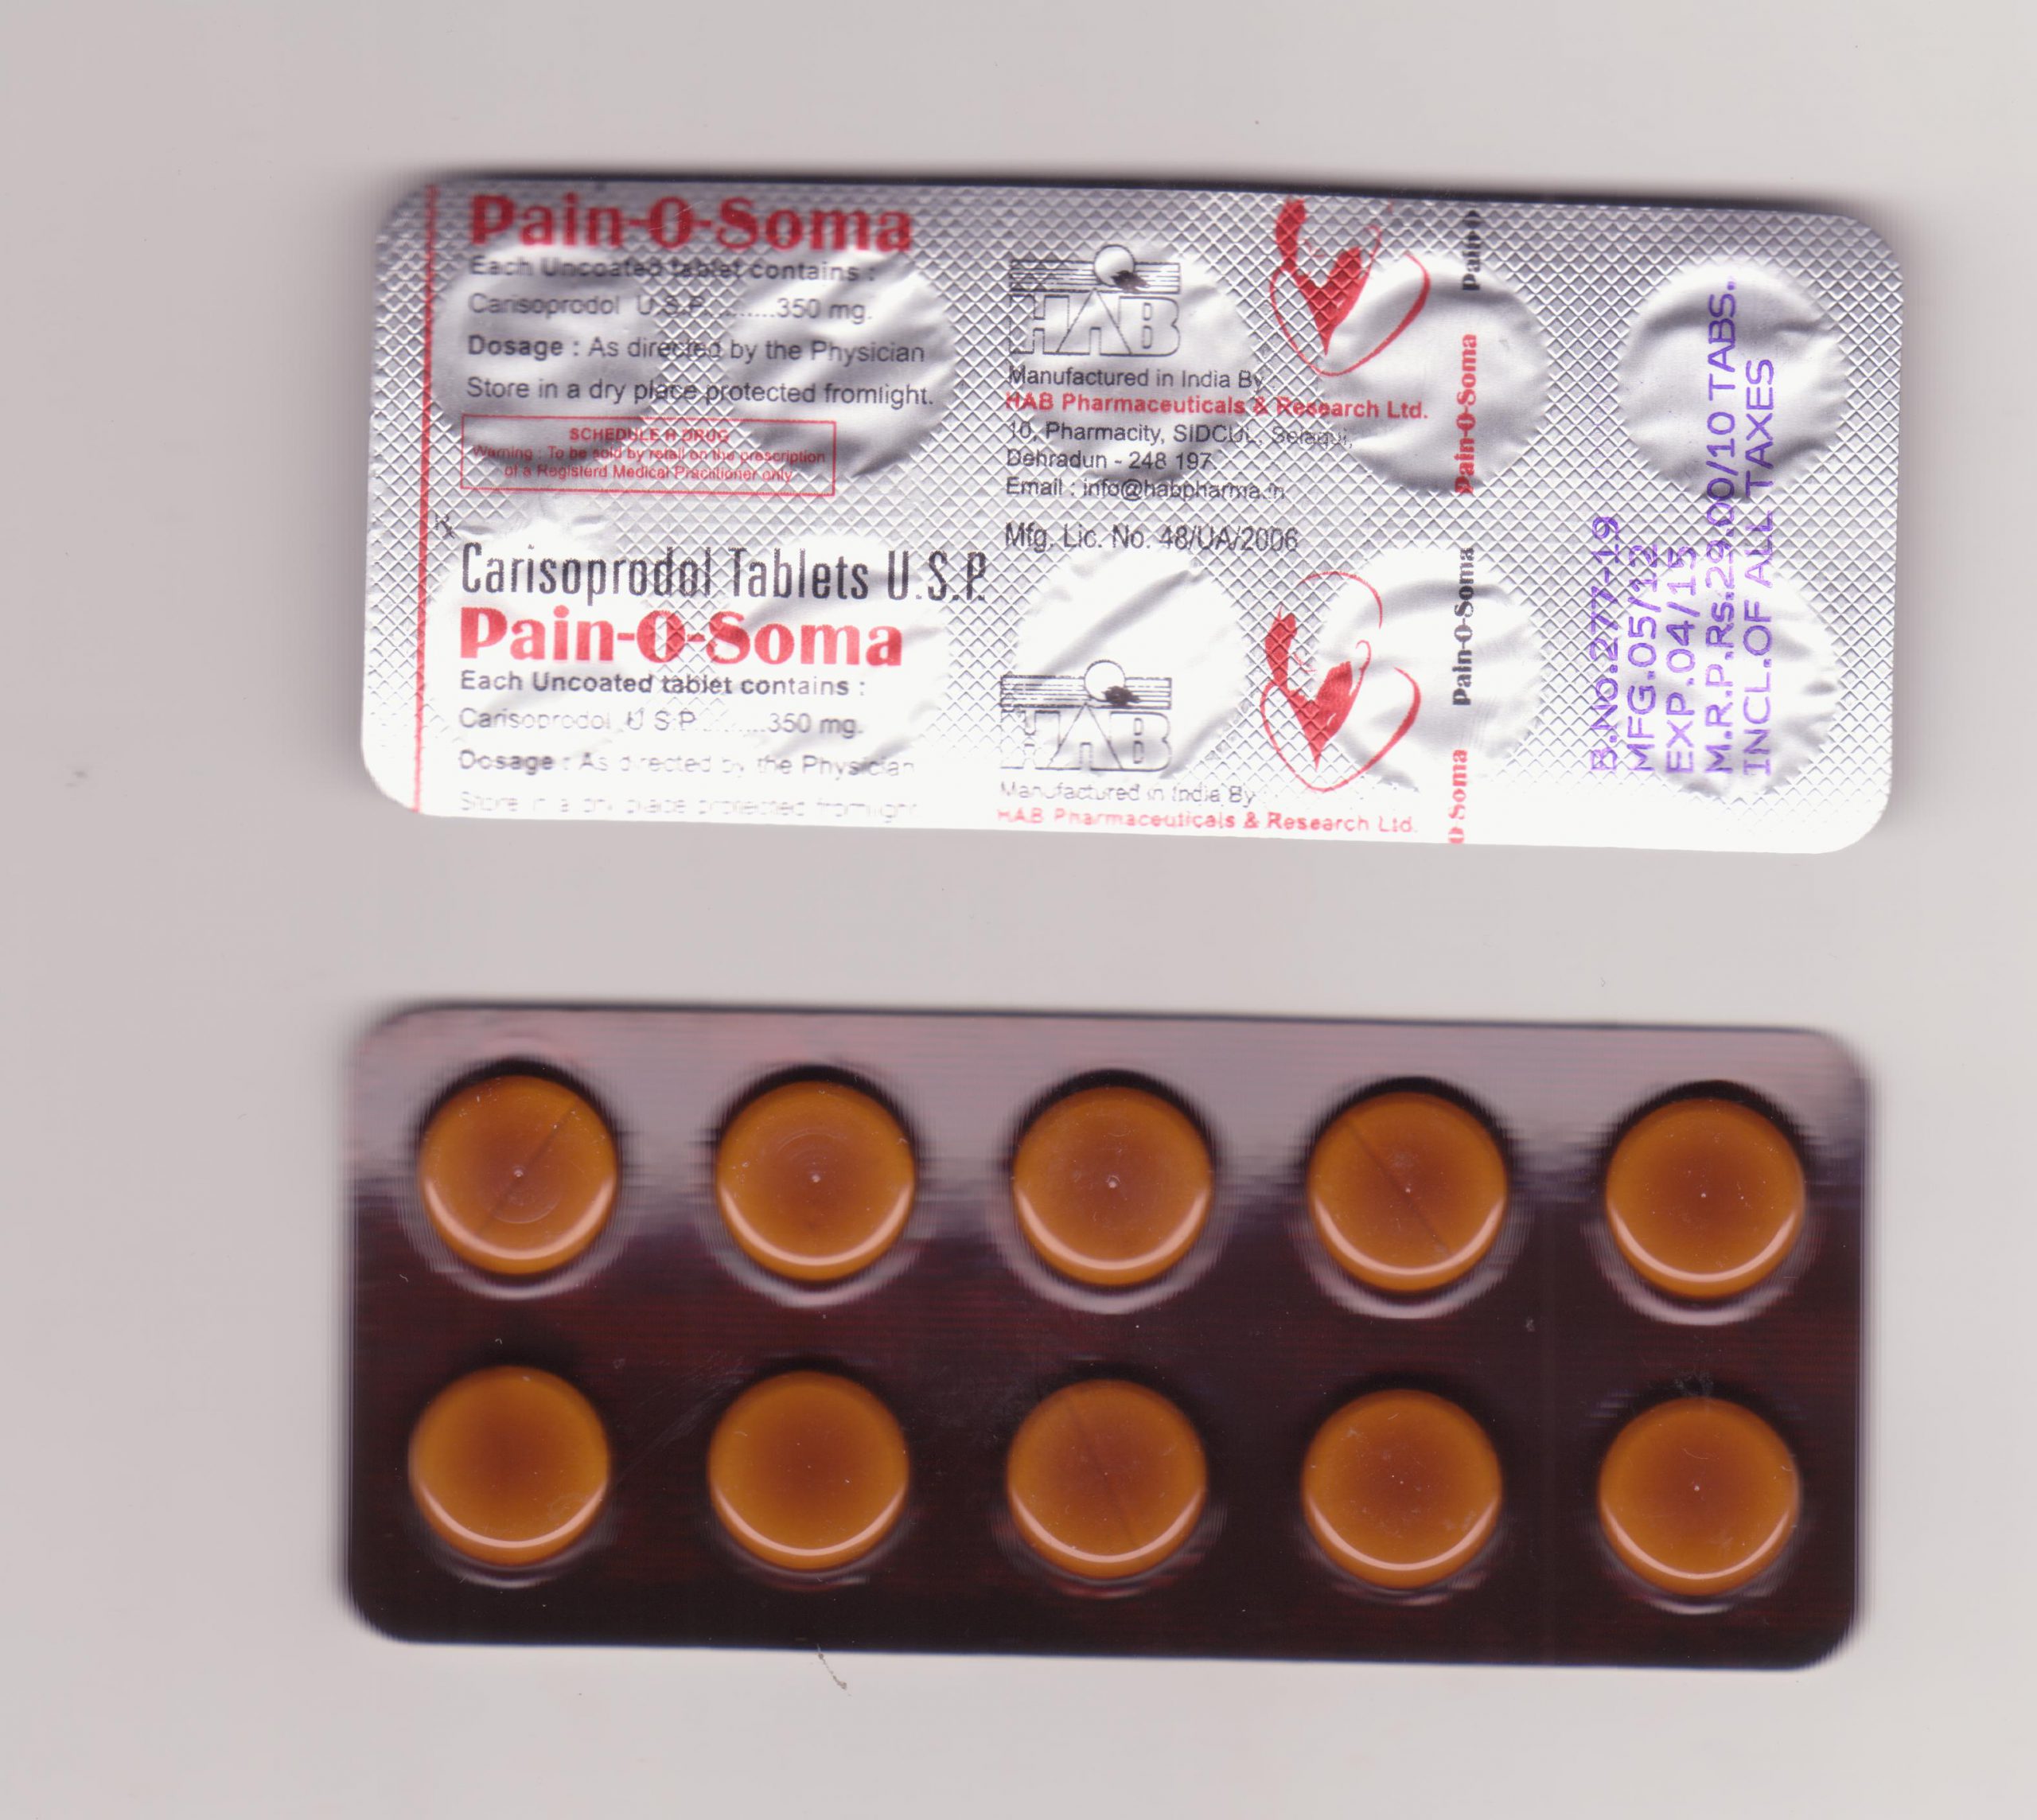 PAIN O SOMA 350 MG Tablet - (carisoprodol) UPTO 28% on 360 Pills